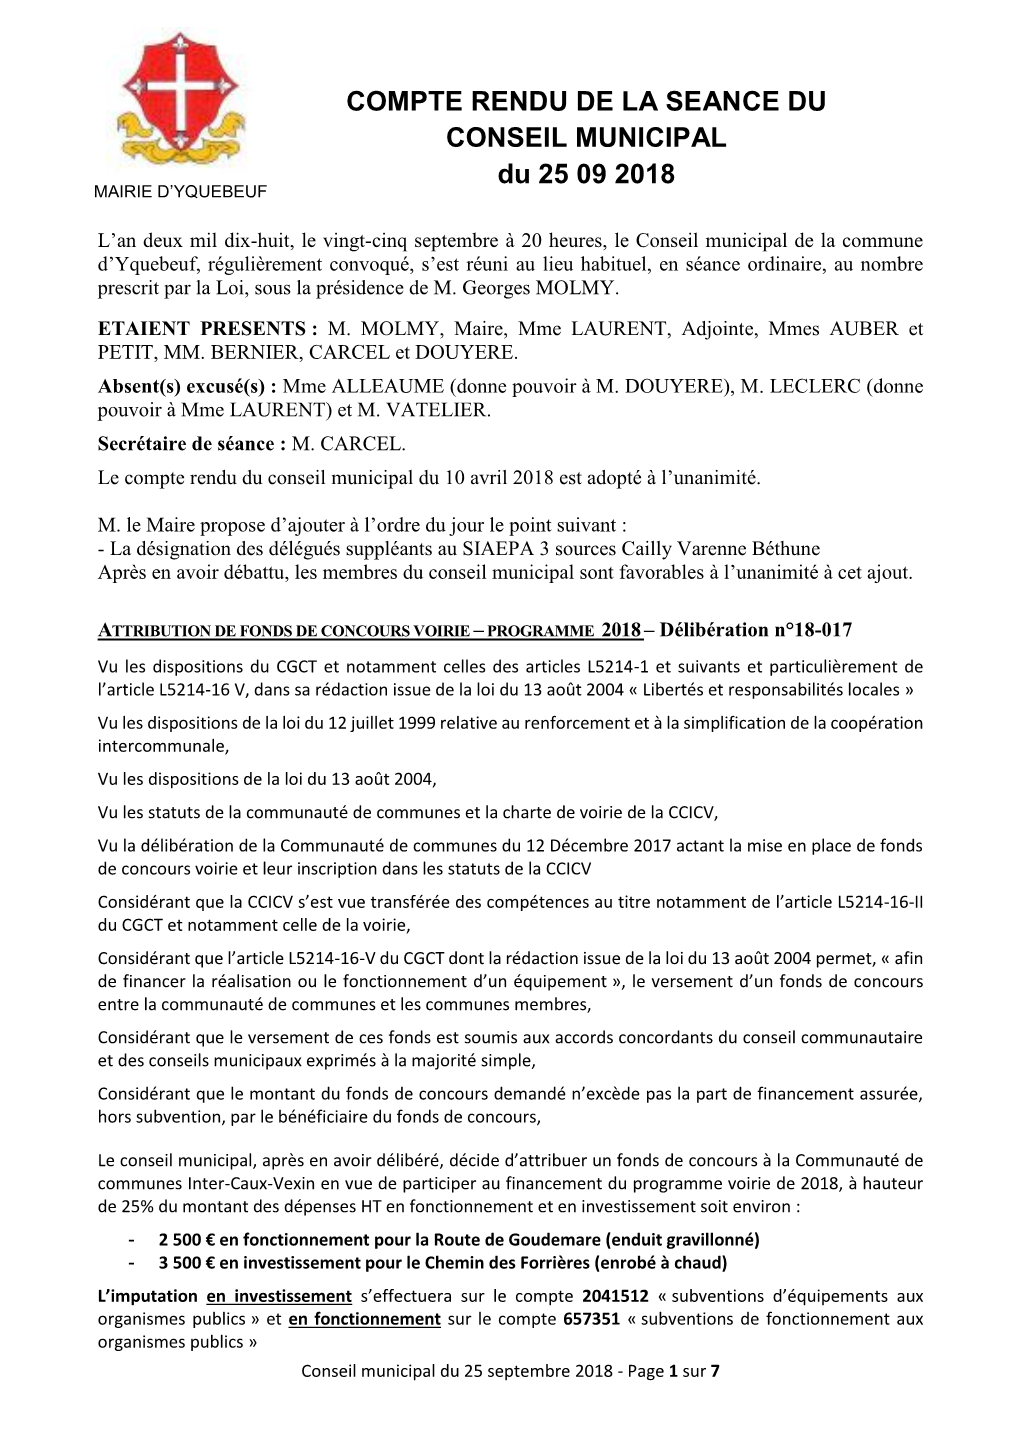 COMPTE RENDU DE LA SEANCE DU CONSEIL MUNICIPAL Du 25 09